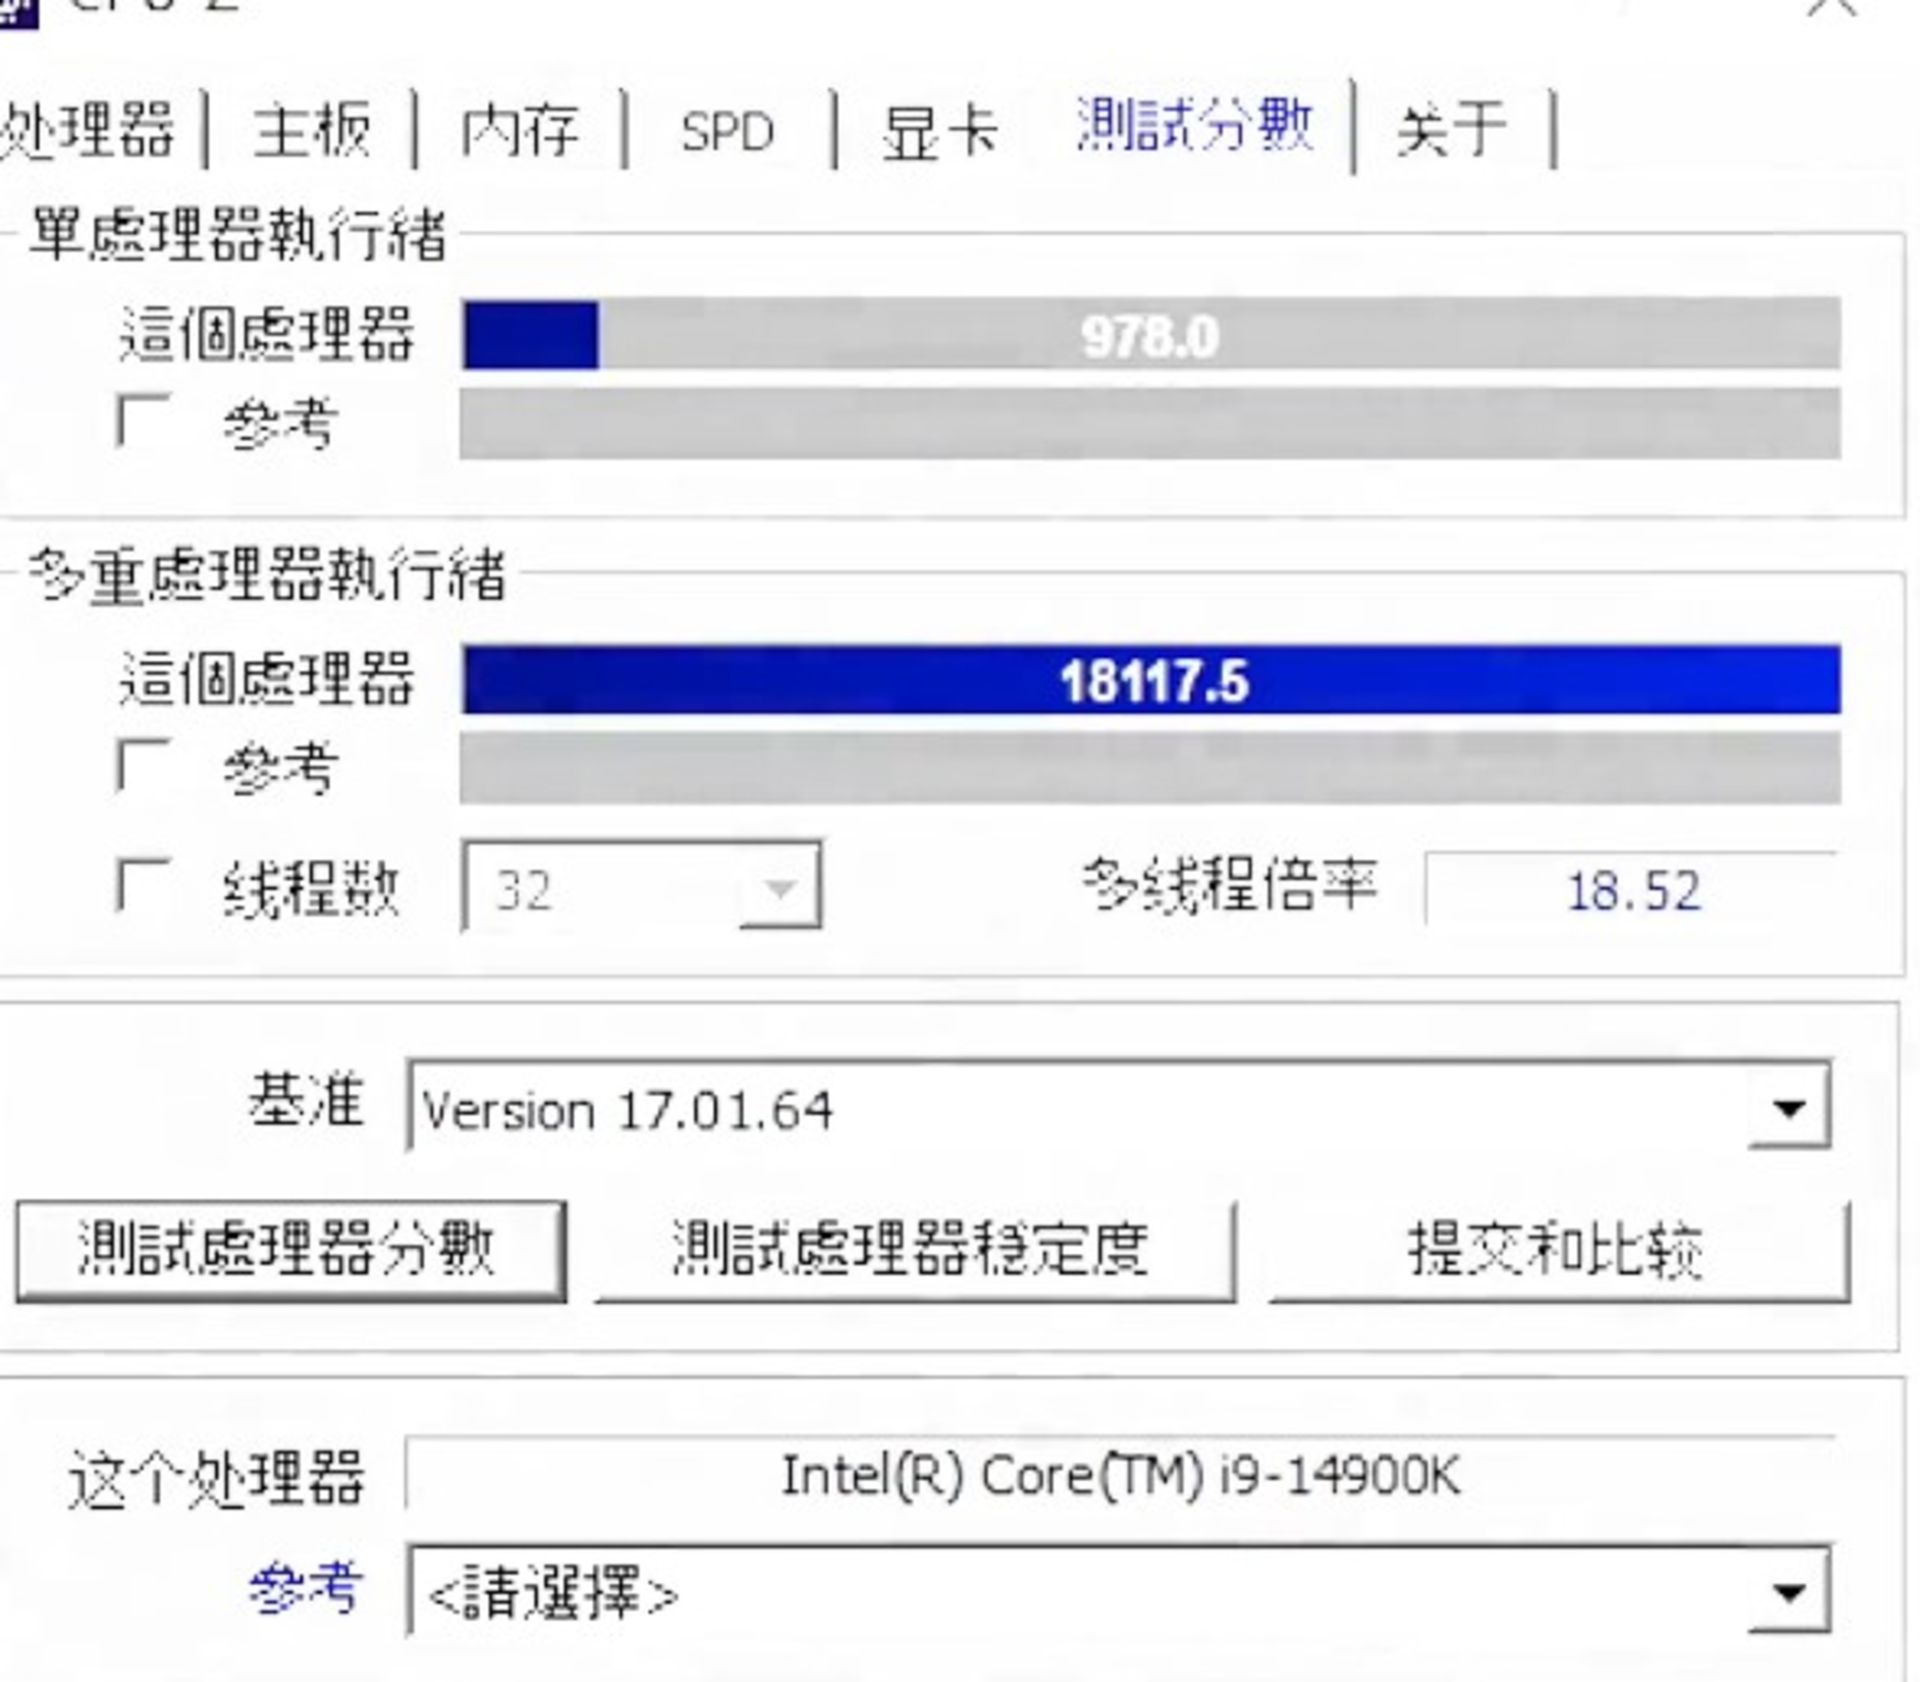 عملکرد Core i9-14900k در معیار CPU-z